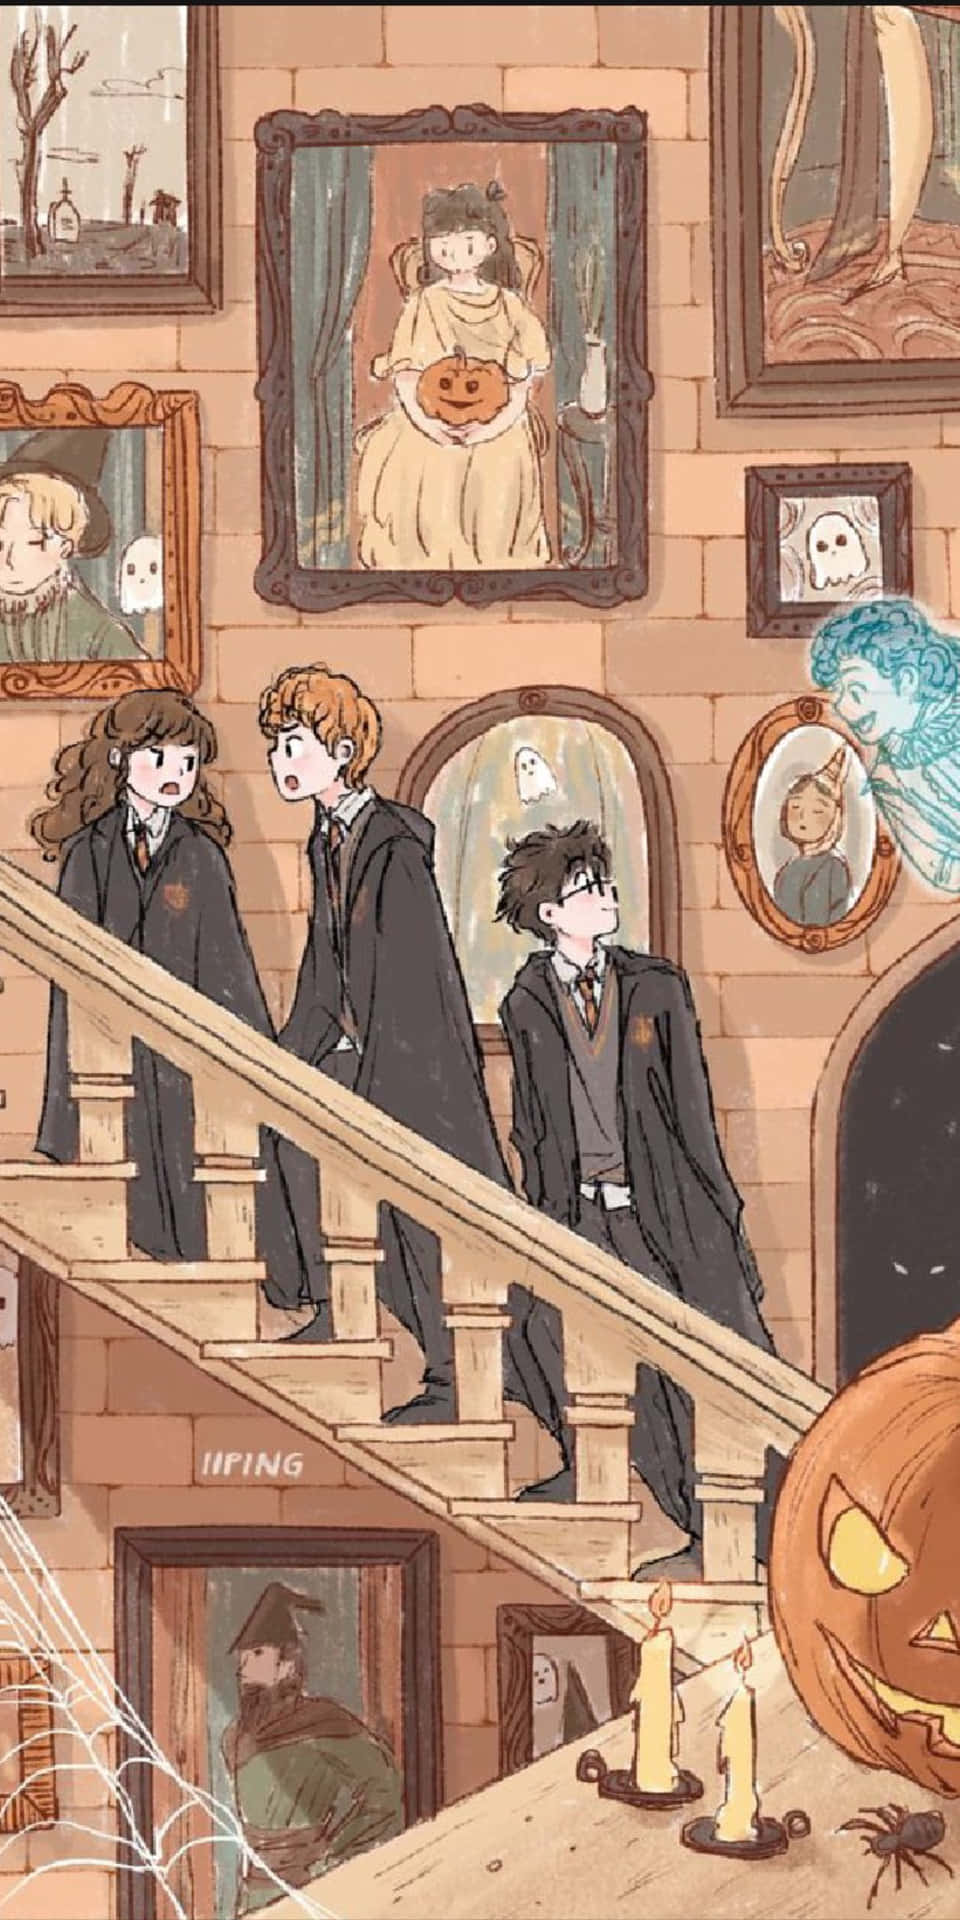 Harry,ron Och Hermione - Den Gyllene Triaden. Wallpaper